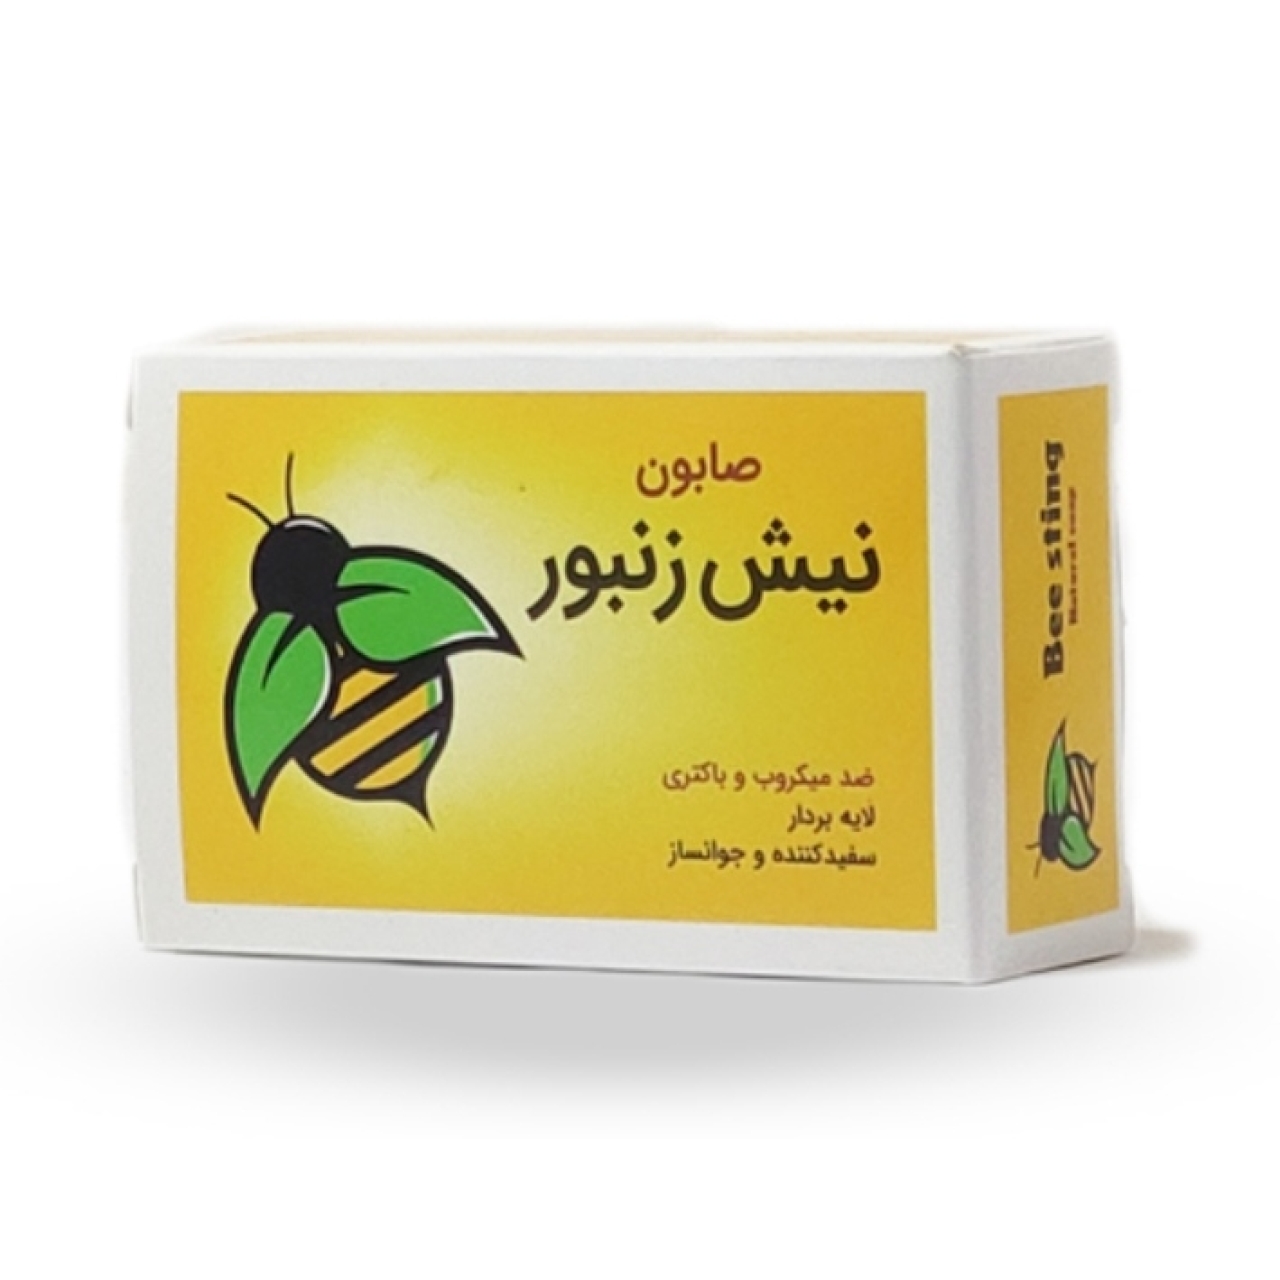 صابون نیش زنبور ایران گیاه وزن 100گرم